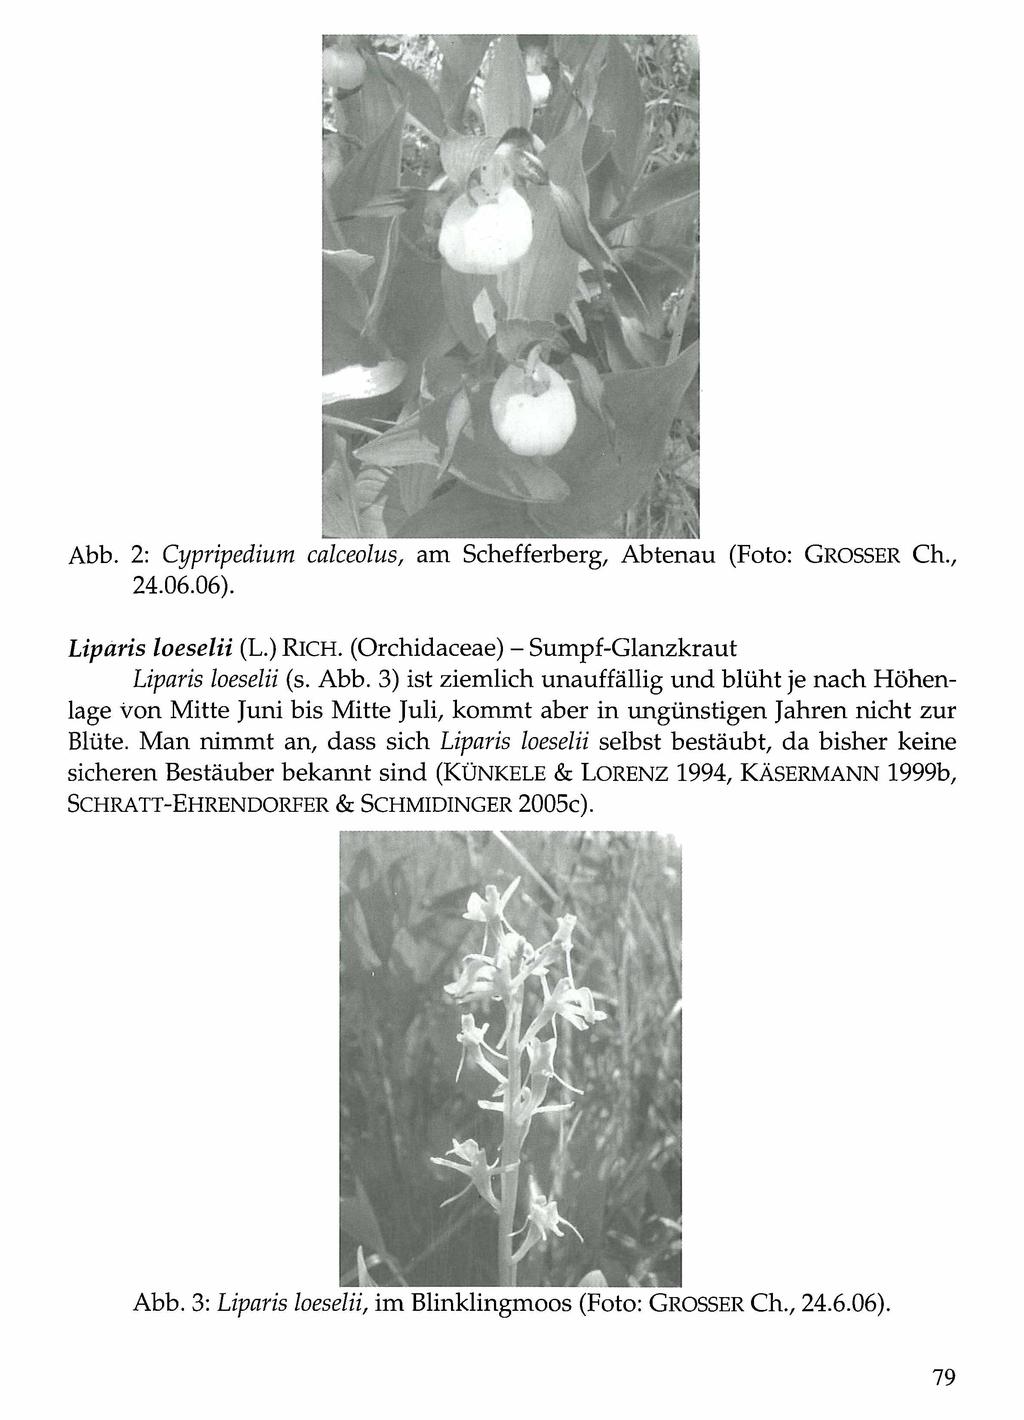 Verlag Alexander Just: Dorfbeuern - Salzburg - Brüssel; download unter www.biologiezentrum.at Abb. 2: Cypripedium calceolus, am Schefferberg, Abtenau (Foto: GROSSER Ch., 24.06.06).